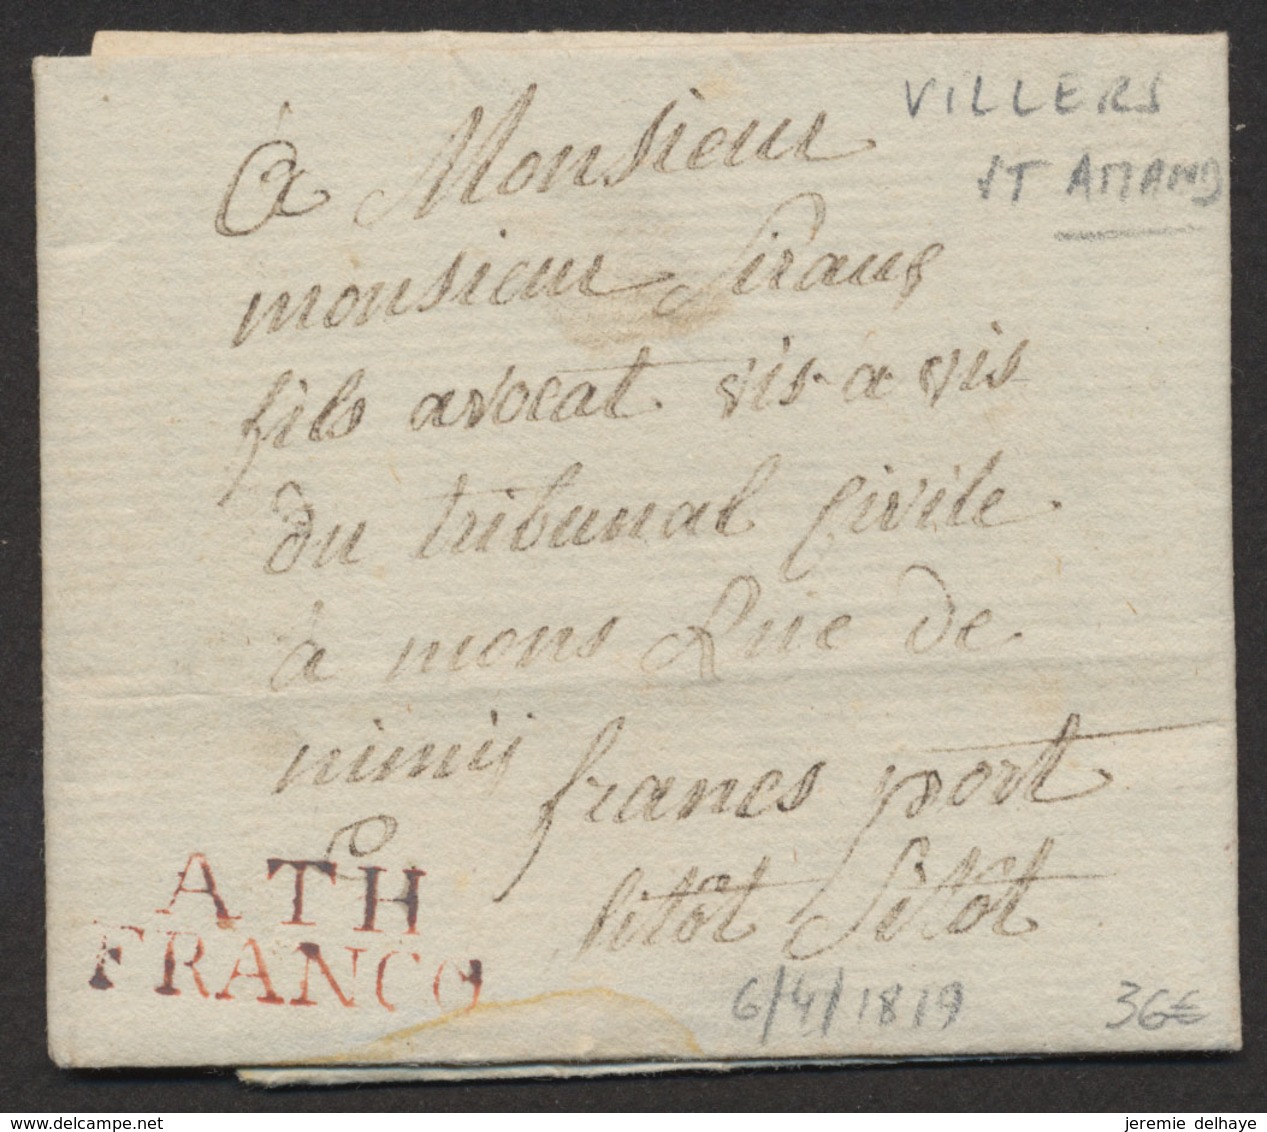 LAC Datée De Villers-St-Amand (1819) + Obl Linéaire ATH / FRANCO, Manusc. "Franc Port" Et "Sitot Sitot" > Mons - 1815-1830 (Holländische Periode)